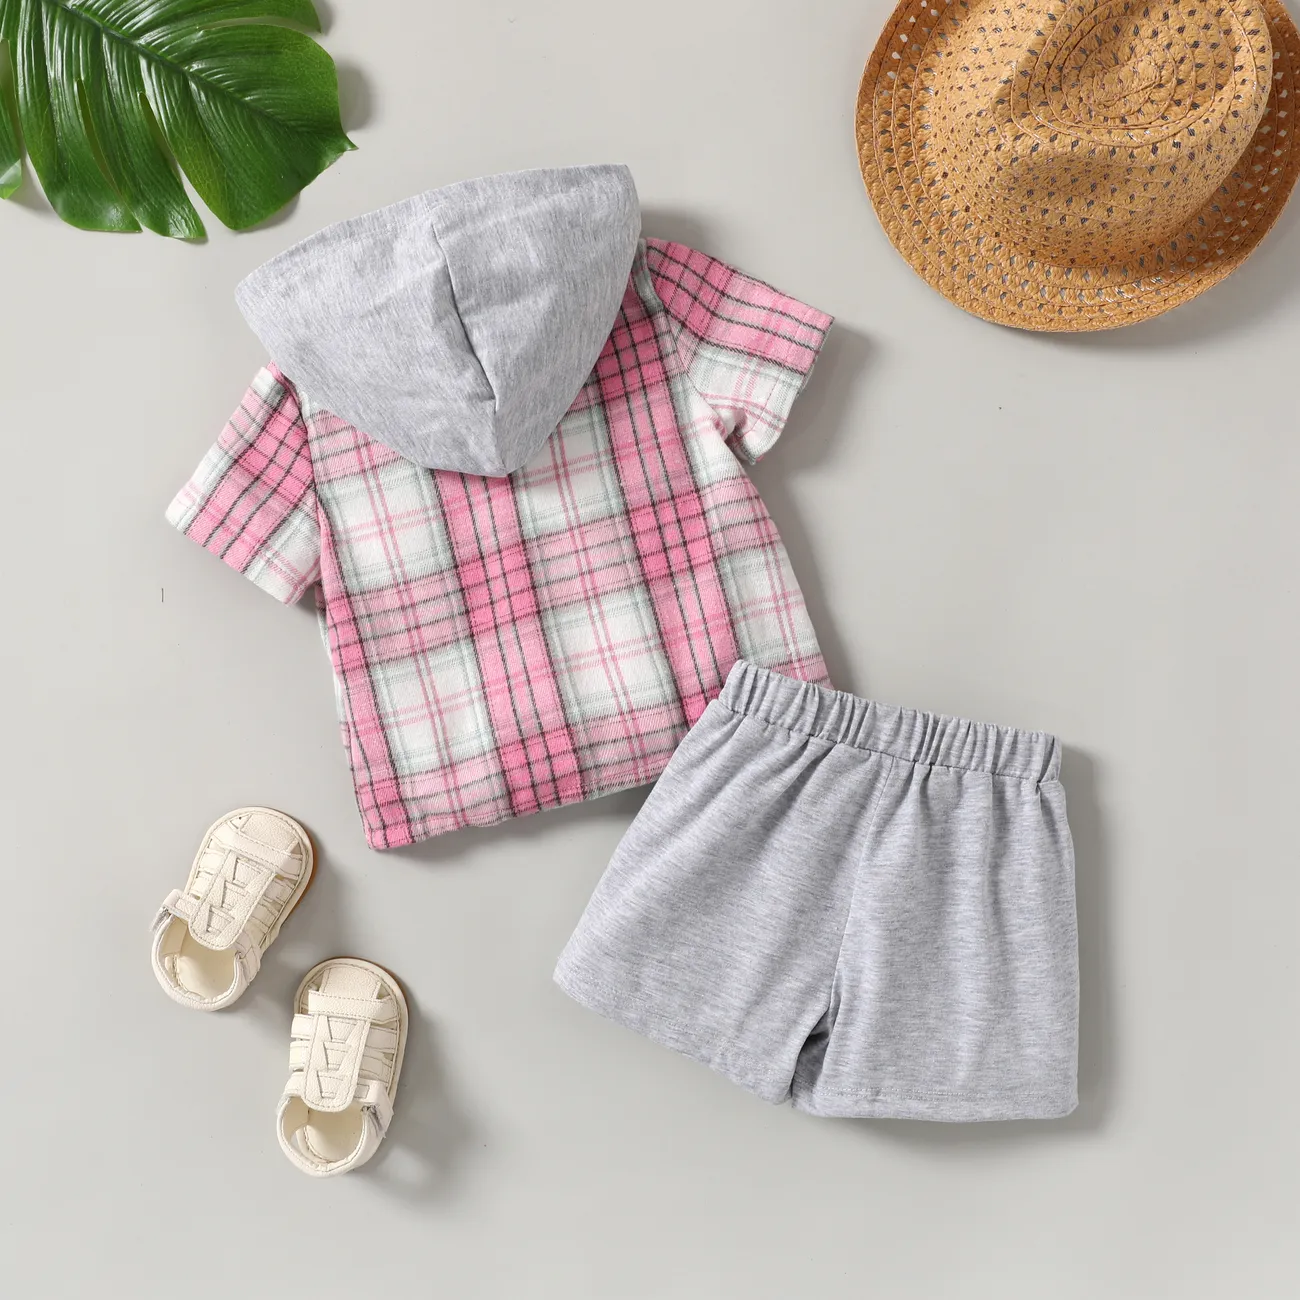 Baby/Toddler Boy 2pcs Plaid Print Hooded Shirt and Shorts Set Pink big image 1